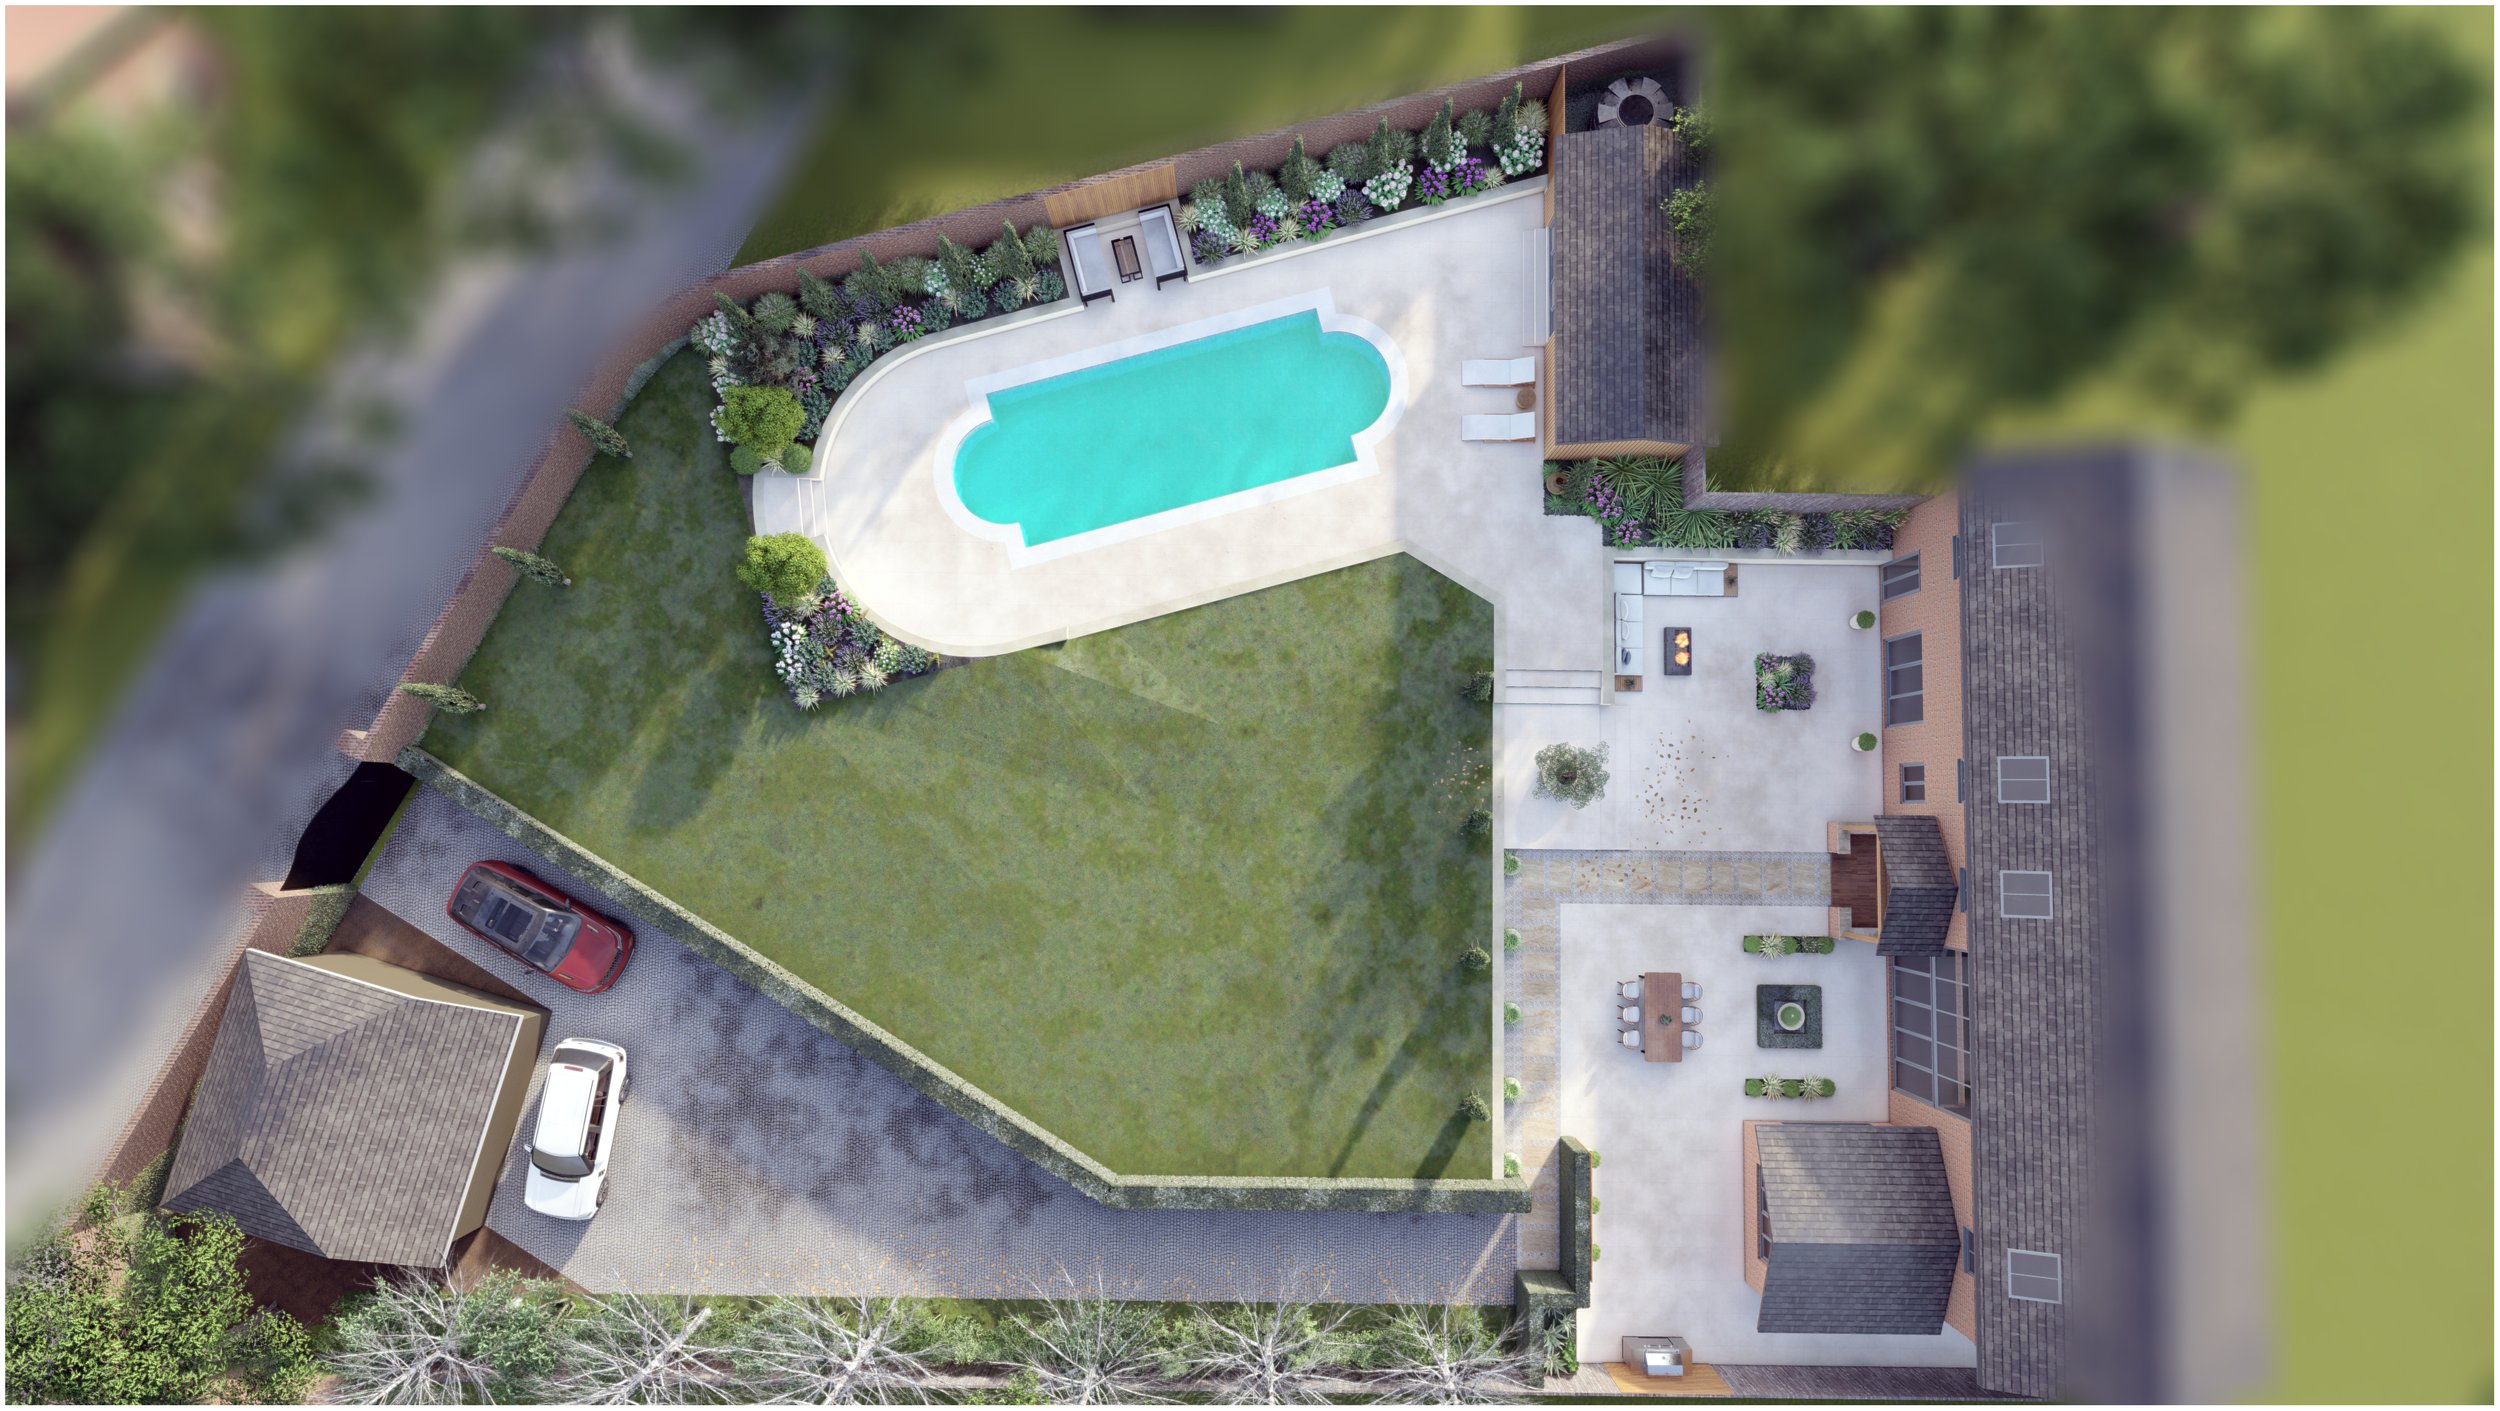 Luxury Pool Garden Design 16.jpg